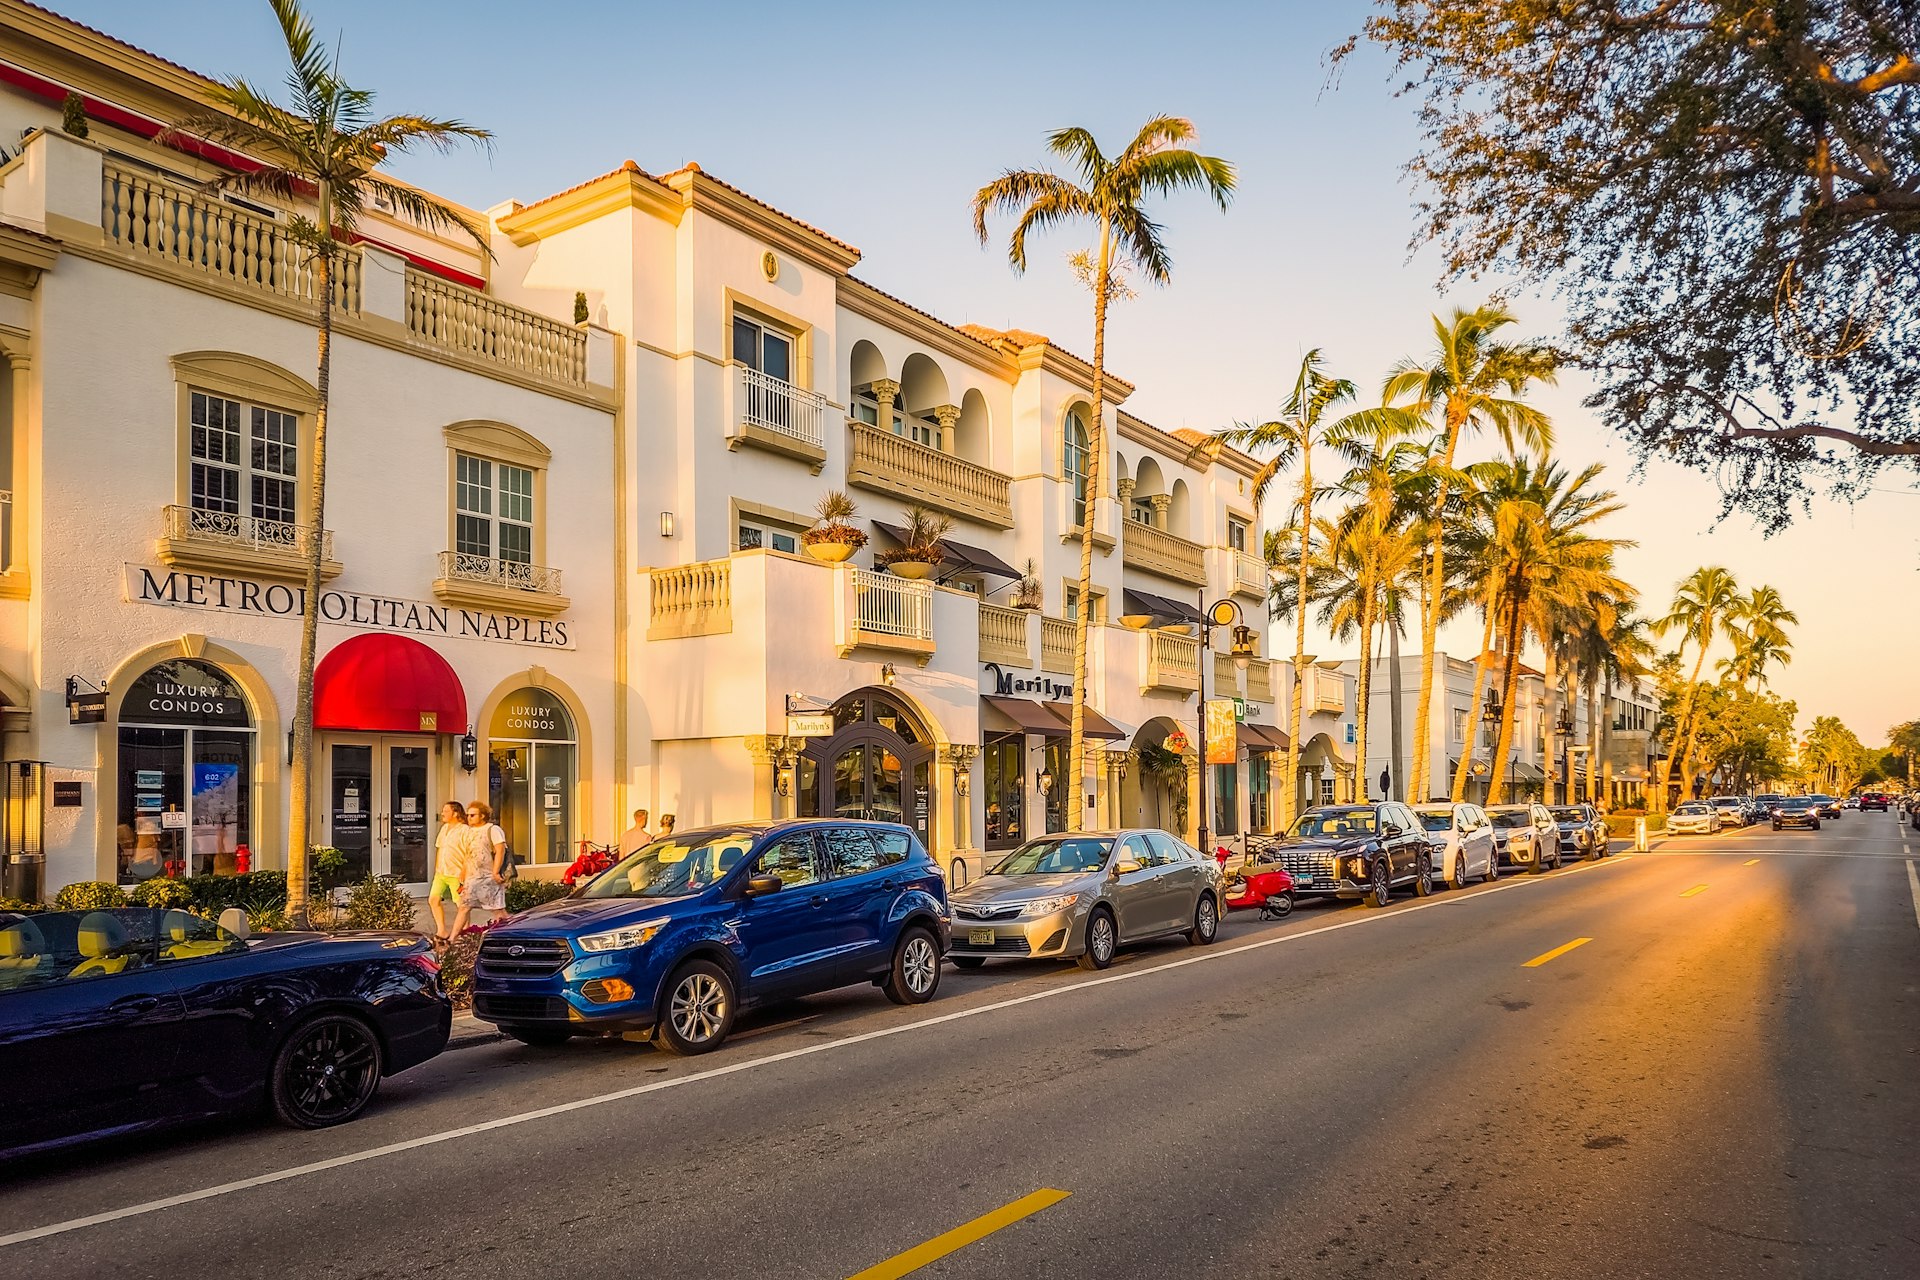 Carros estão estacionados ao lado de prédios brancos em uma rua repleta de palmeiras ao pôr do sol